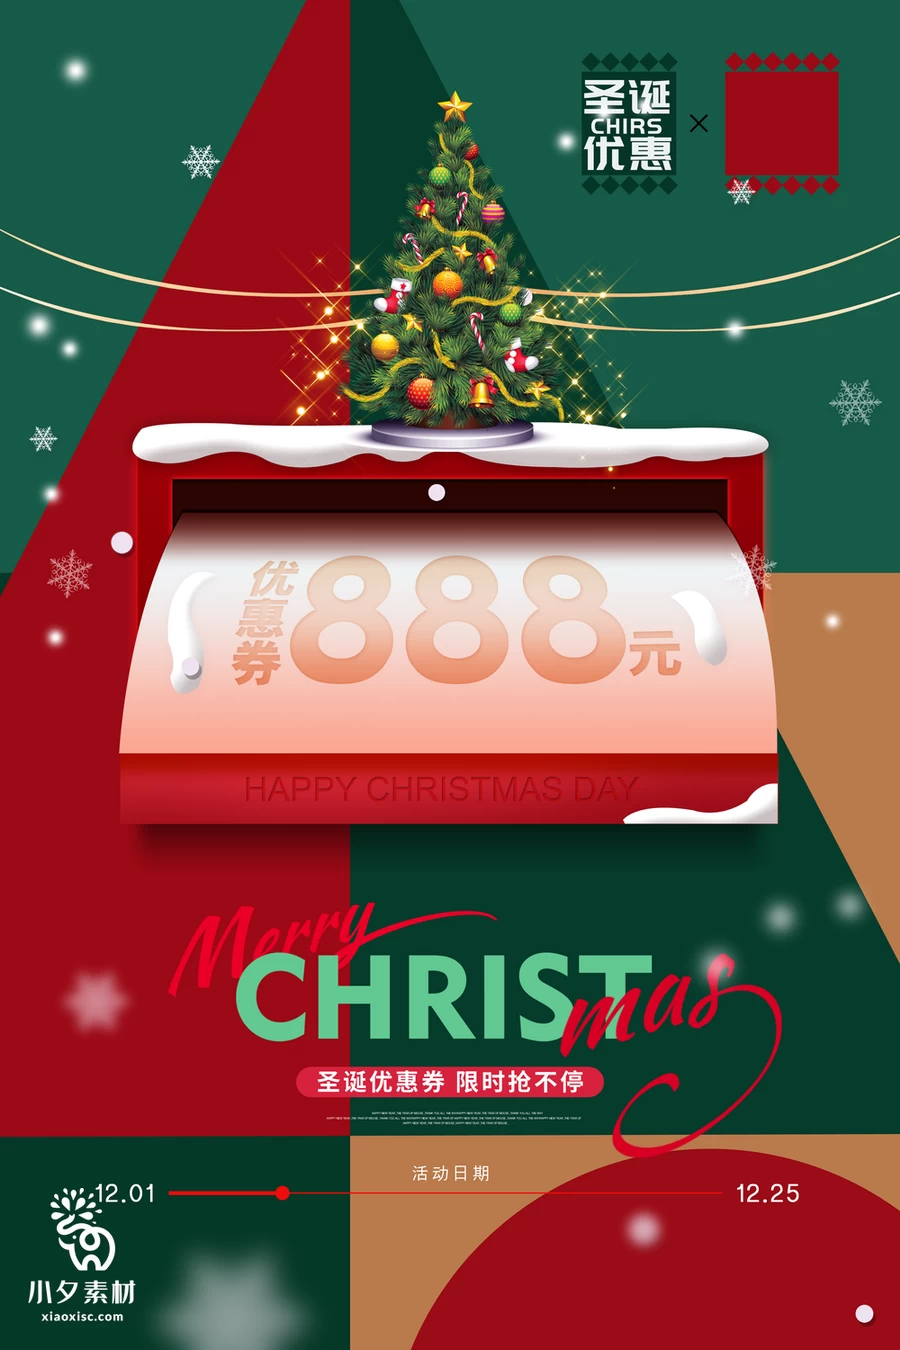 圣诞节节日节庆海报模板PSD分层设计素材【012】